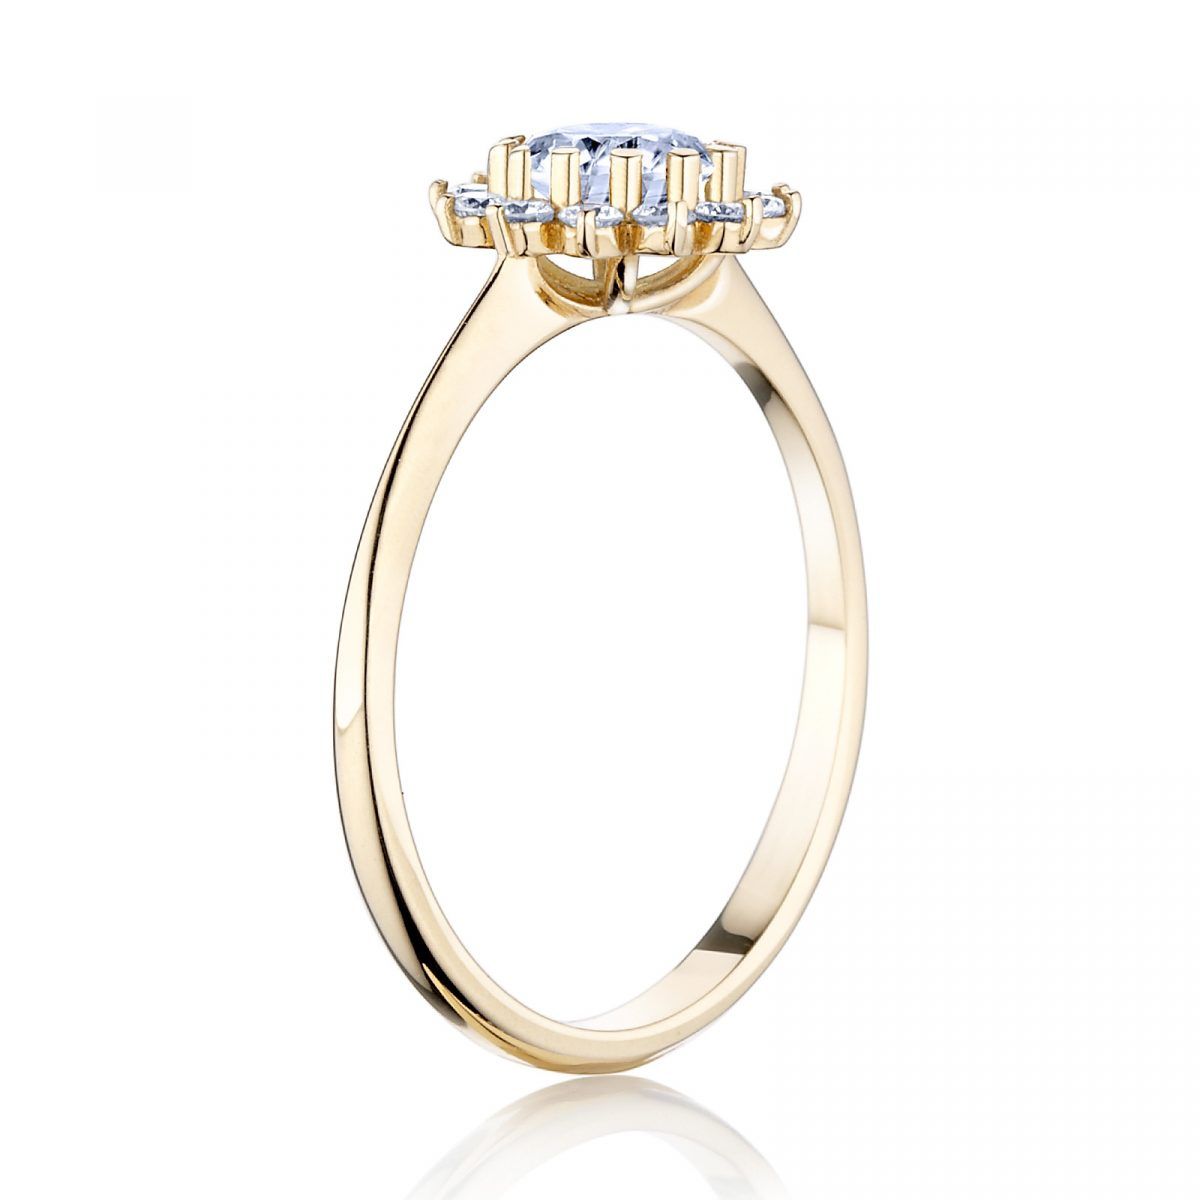 Prsteň Rosie 2 - žlté zlato s prírodným diamantom